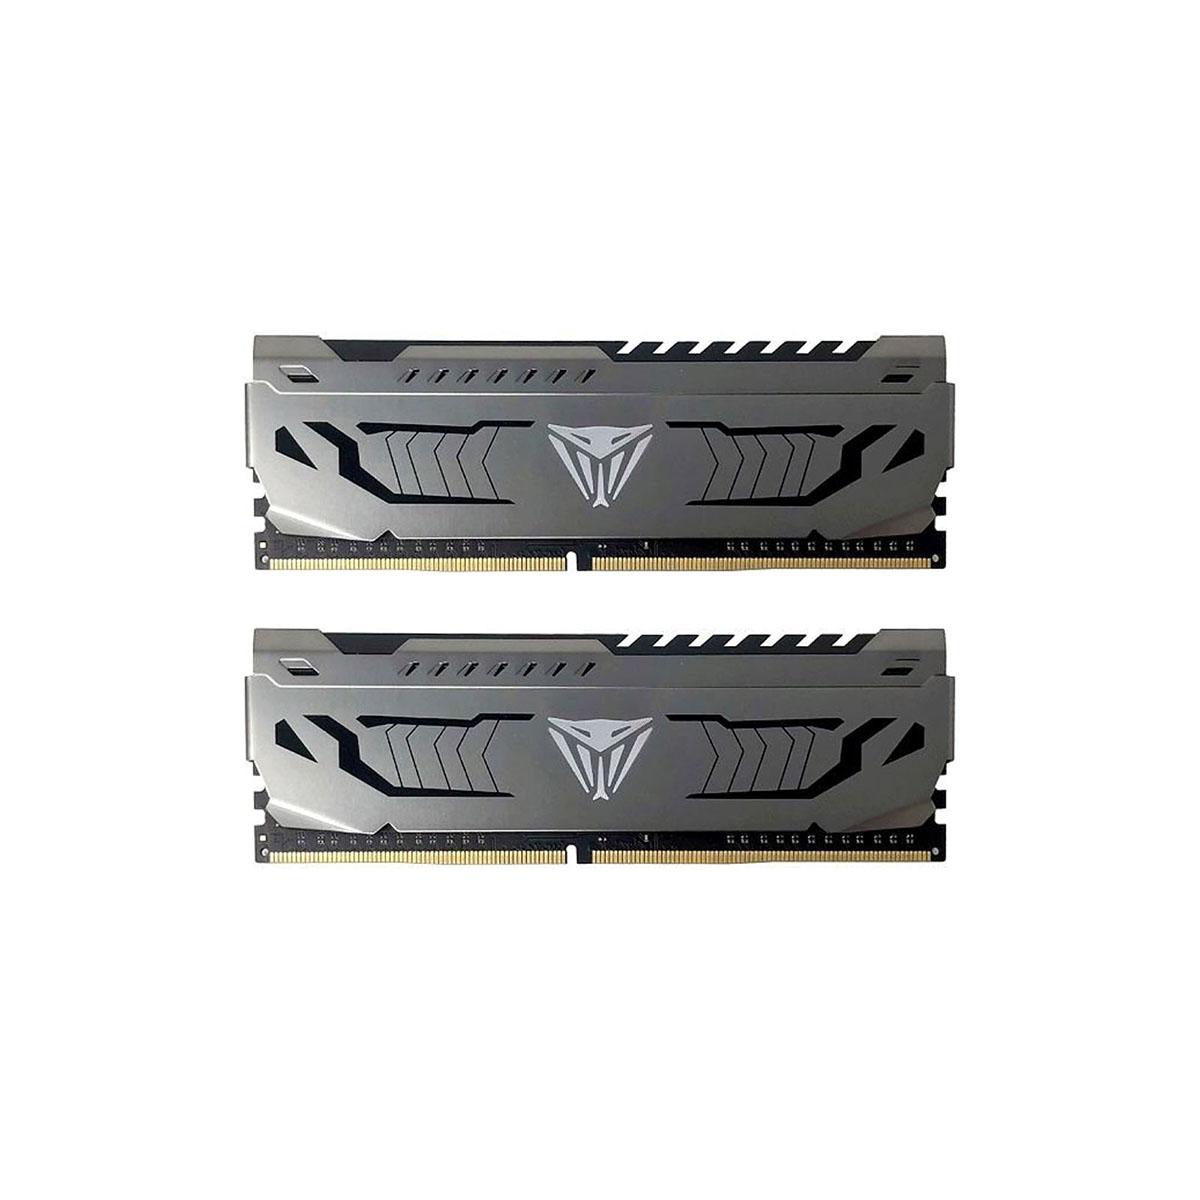 MEMORIA DIMM DDR4 PATRIOT (PVS416G300C6K) VIPER STEEL 16GB 3000MHZ KIT (2X8GB), GRAY HEATSINK,CL16 - PVS416G300C6K